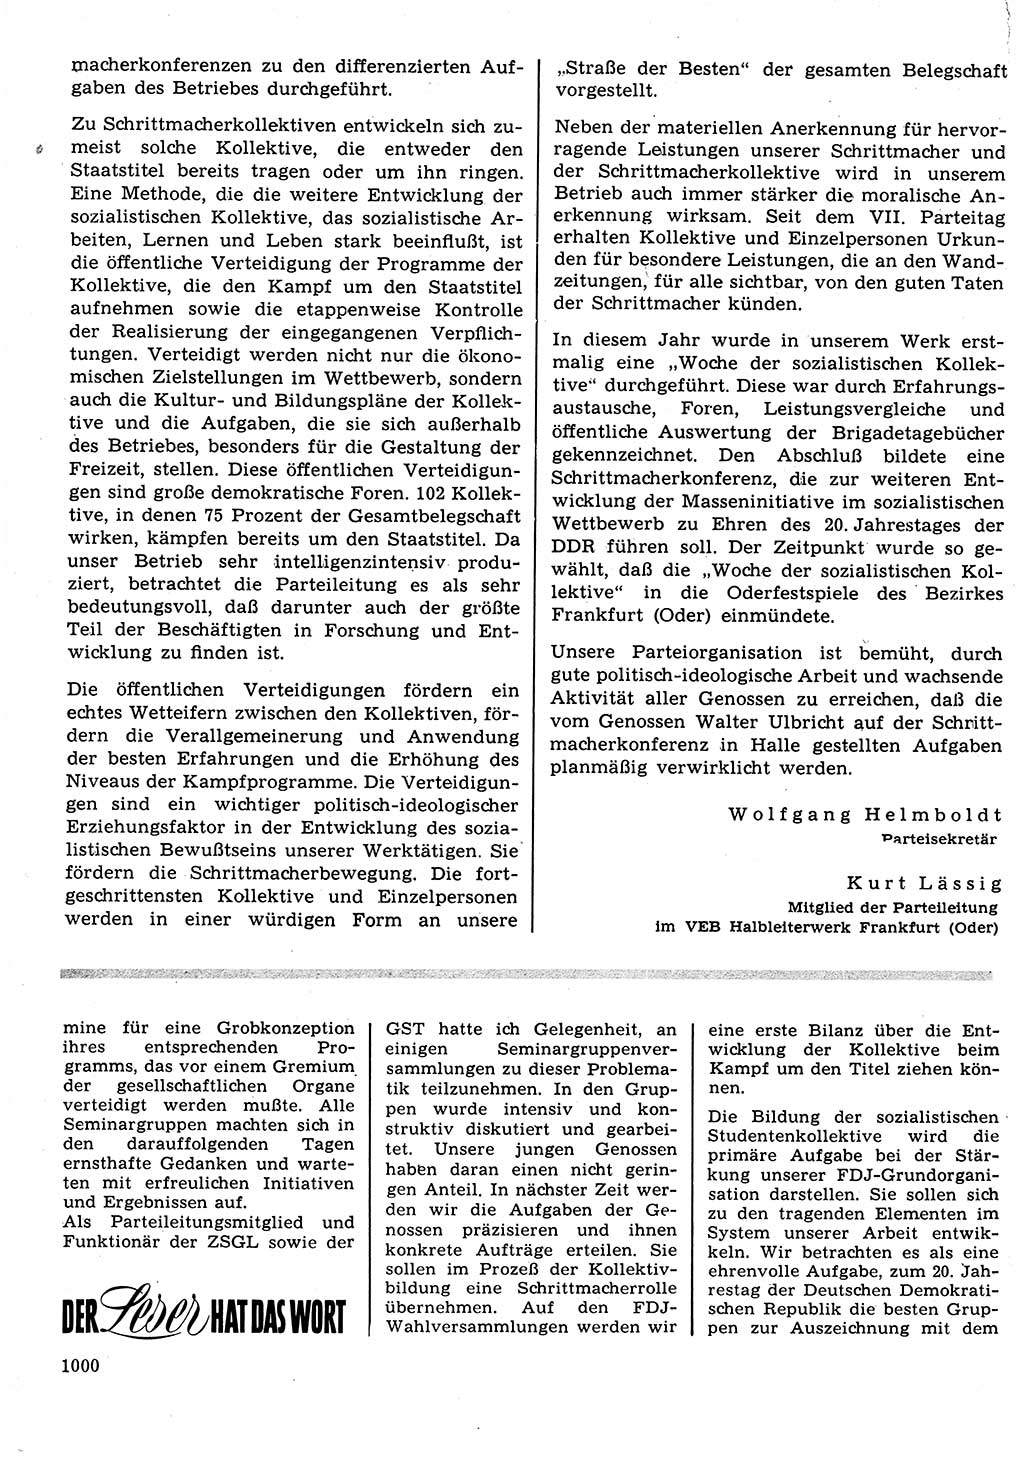 Neuer Weg (NW), Organ des Zentralkomitees (ZK) der SED (Sozialistische Einheitspartei Deutschlands) für Fragen des Parteilebens, 23. Jahrgang [Deutsche Demokratische Republik (DDR)] 1968, Seite 984 (NW ZK SED DDR 1968, S. 984)